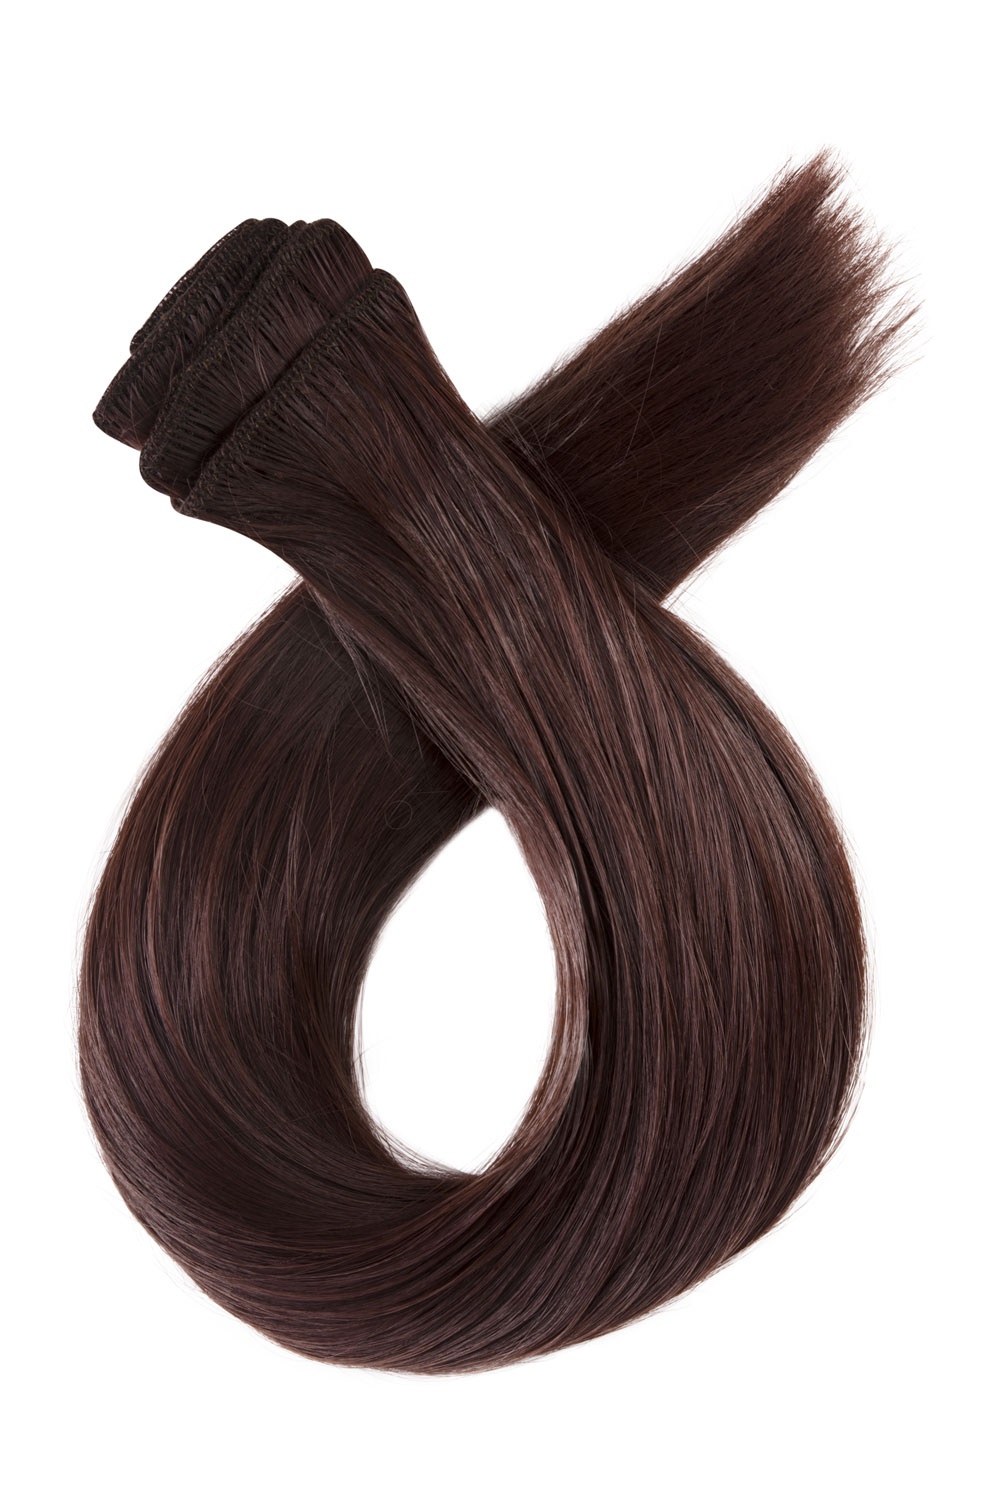 Tmavé červenohnedé clip in vlasy, 60cm, 180g, farba 33